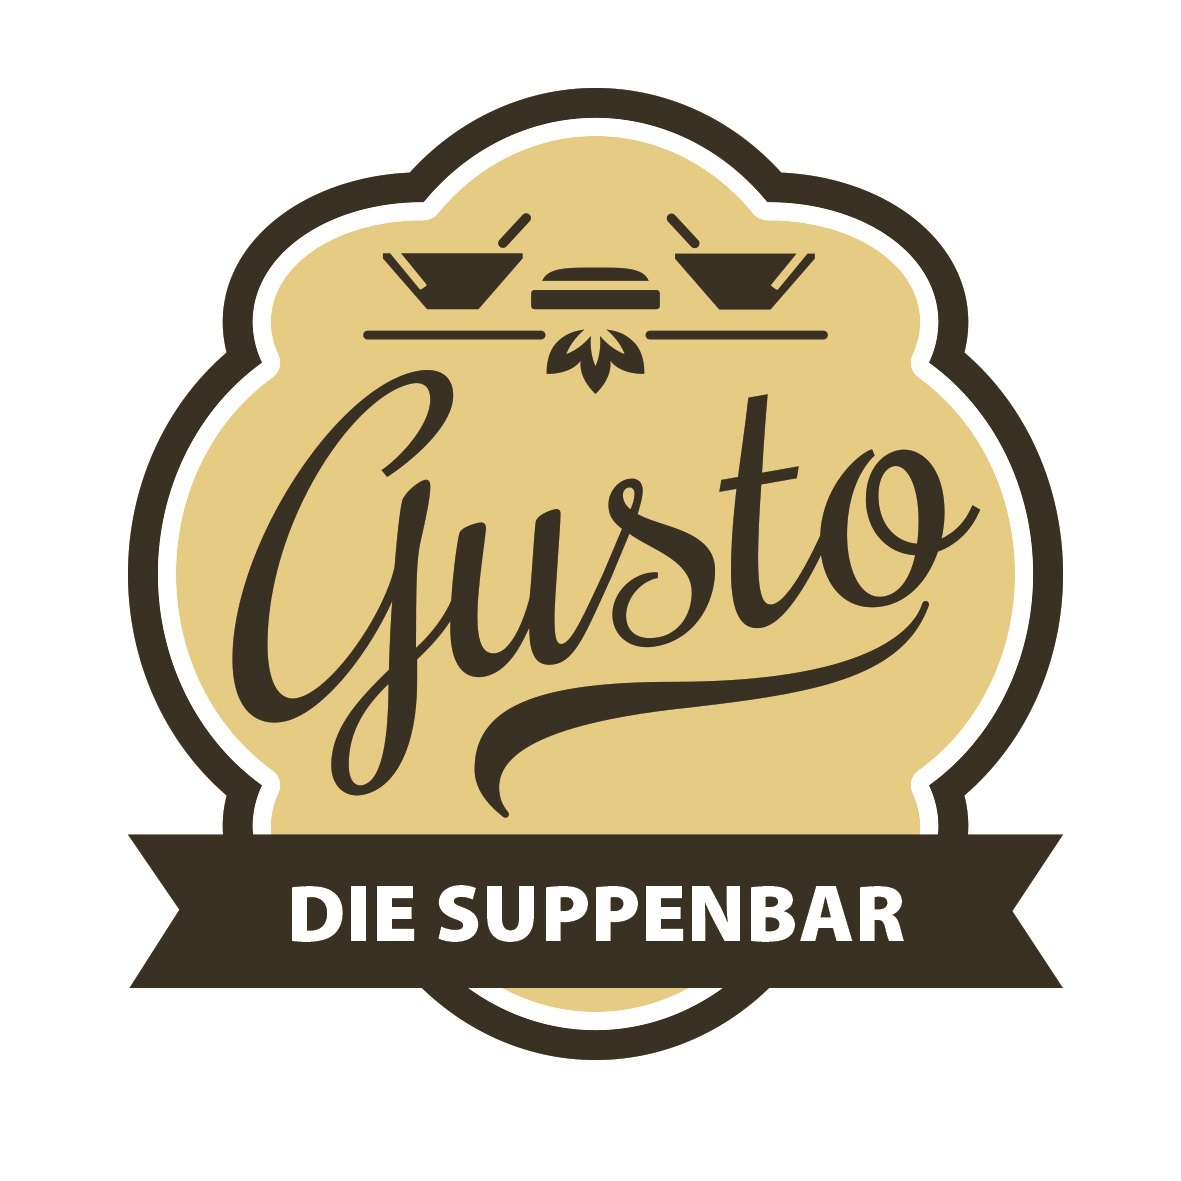 Bild 1 Gusto - Die Suppenbar in München